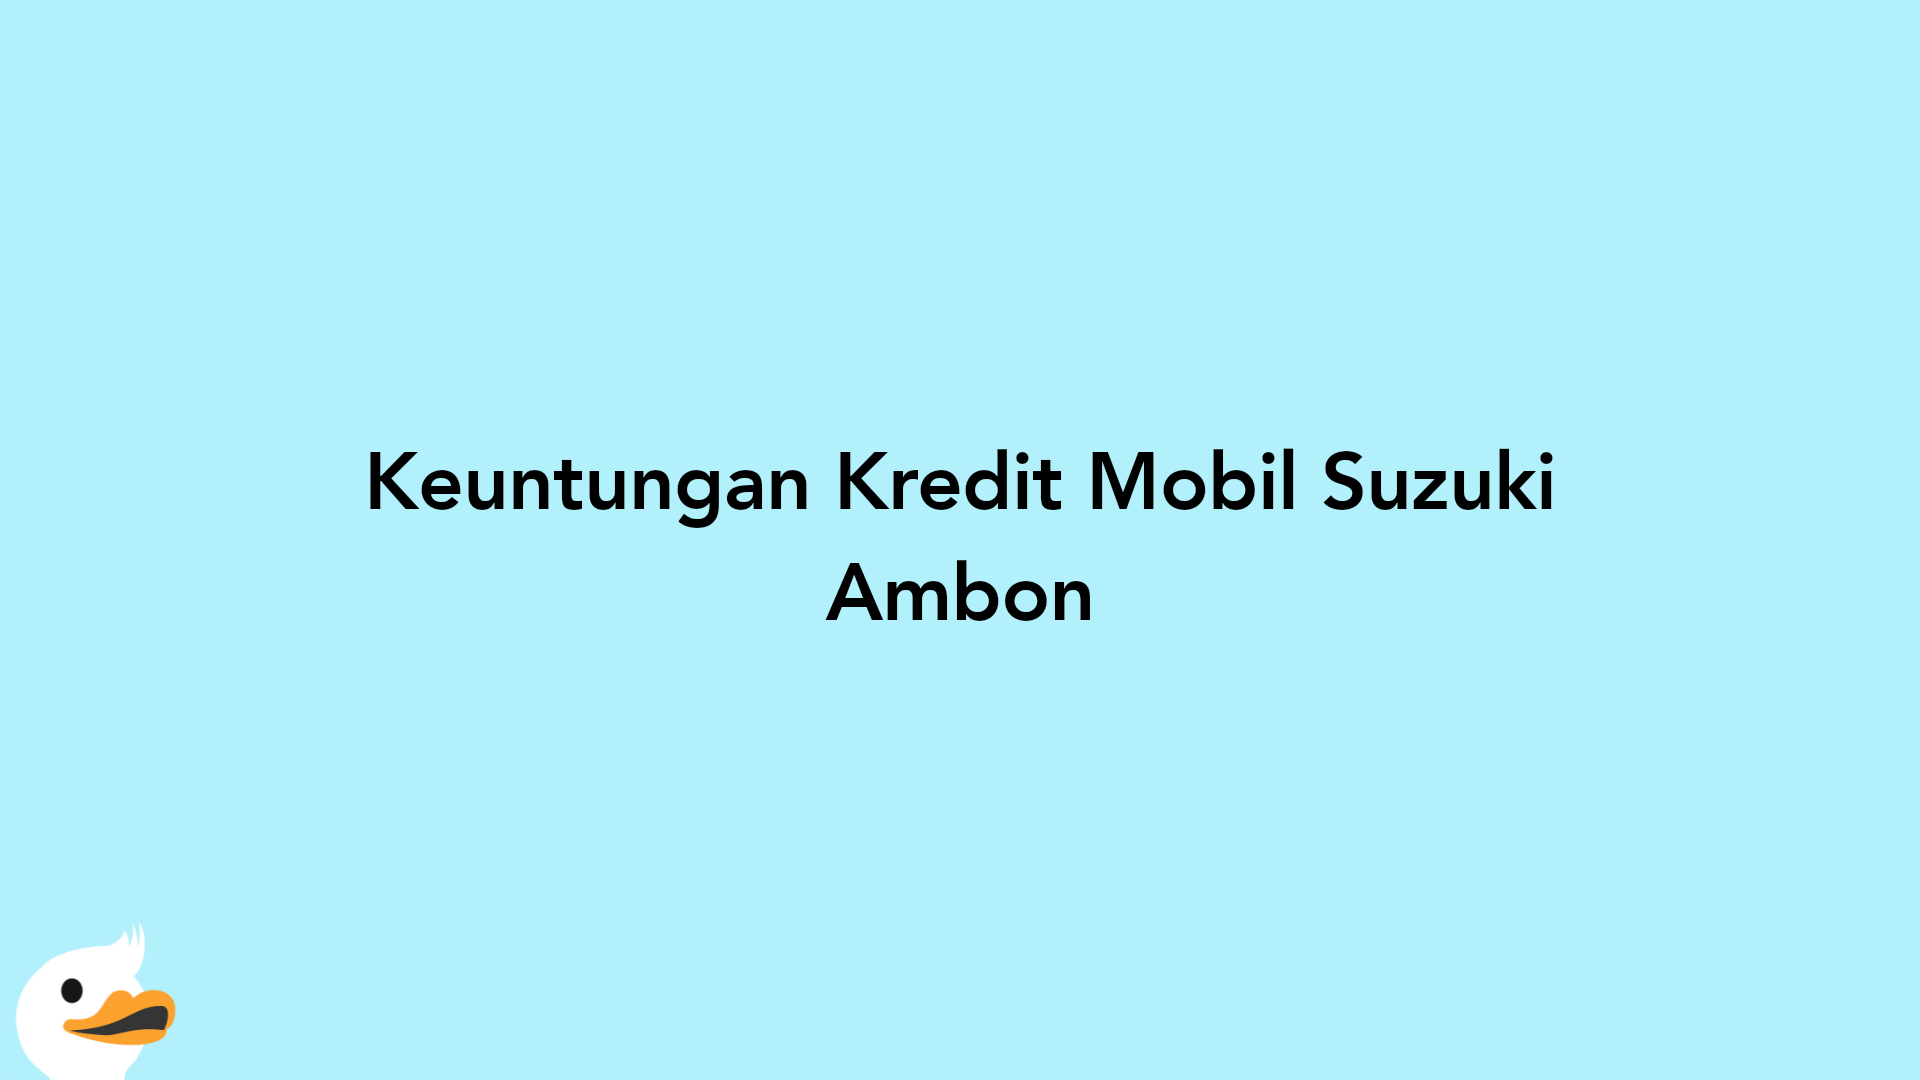 Keuntungan Kredit Mobil Suzuki Ambon